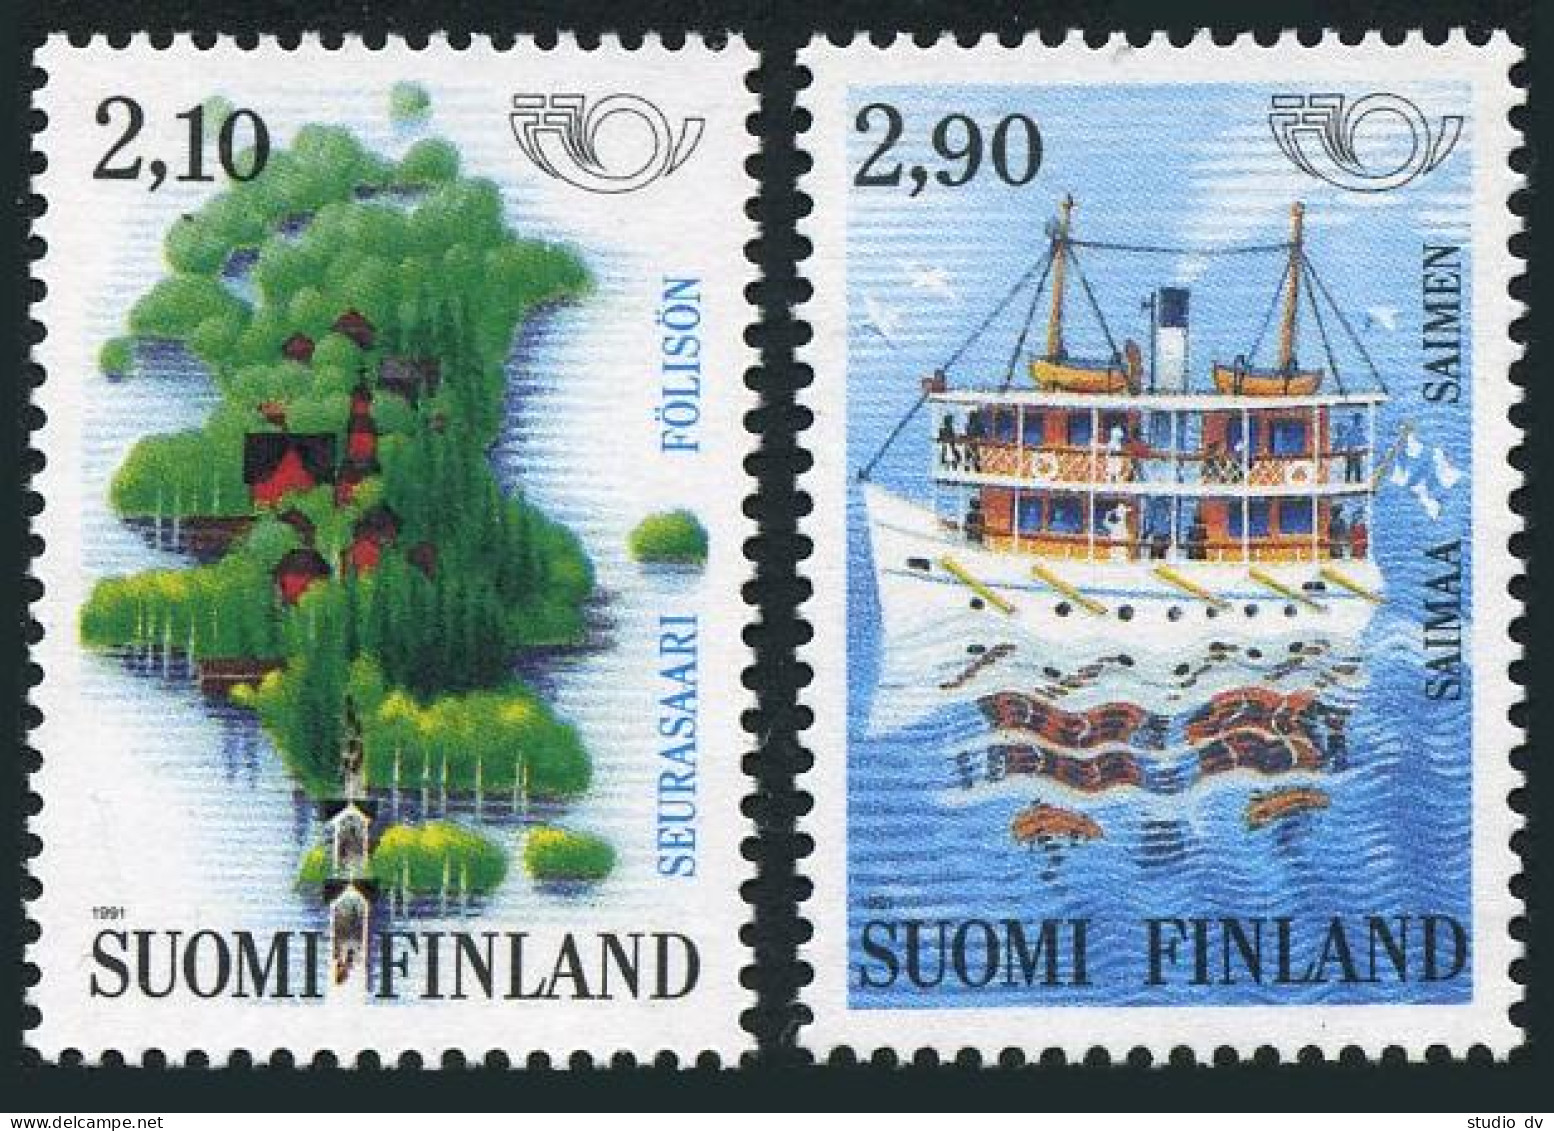 Finland 864-865,MNH.Michel 1142-1143. Tourism 1991.Seurasaari Island,Steamship, - Ongebruikt